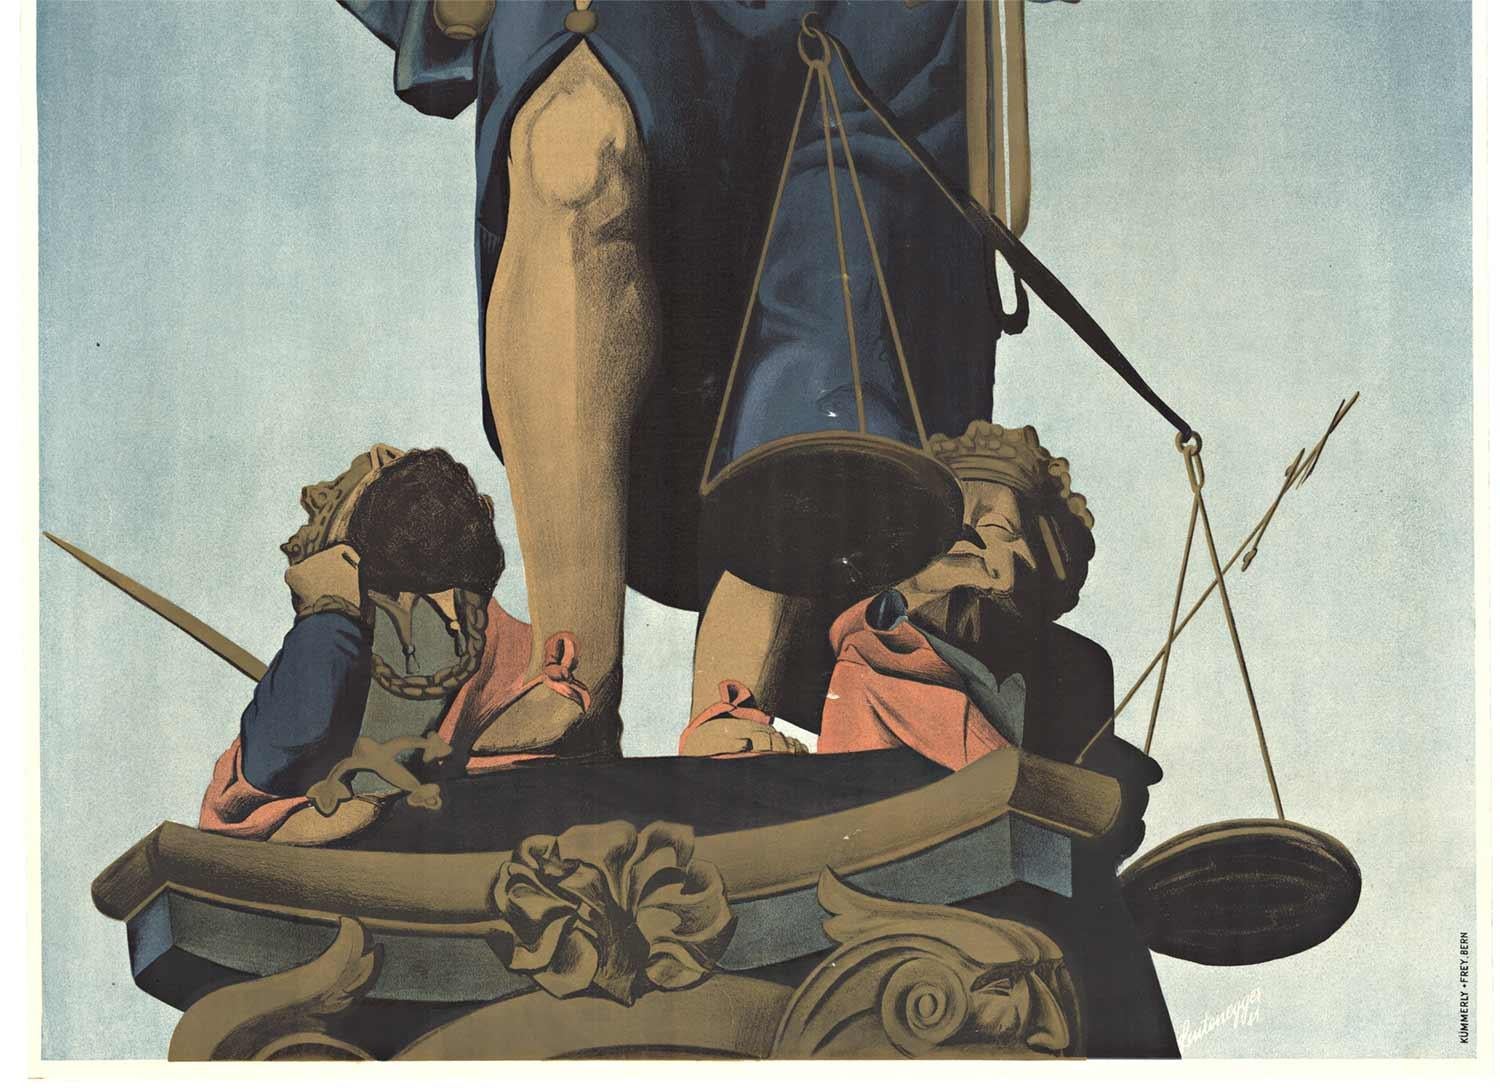 Originales Original-Vintage-Poster „Bern Svizzera“, Blind scale of justice (Amerikanischer Realismus), Print, von Leutenegger 